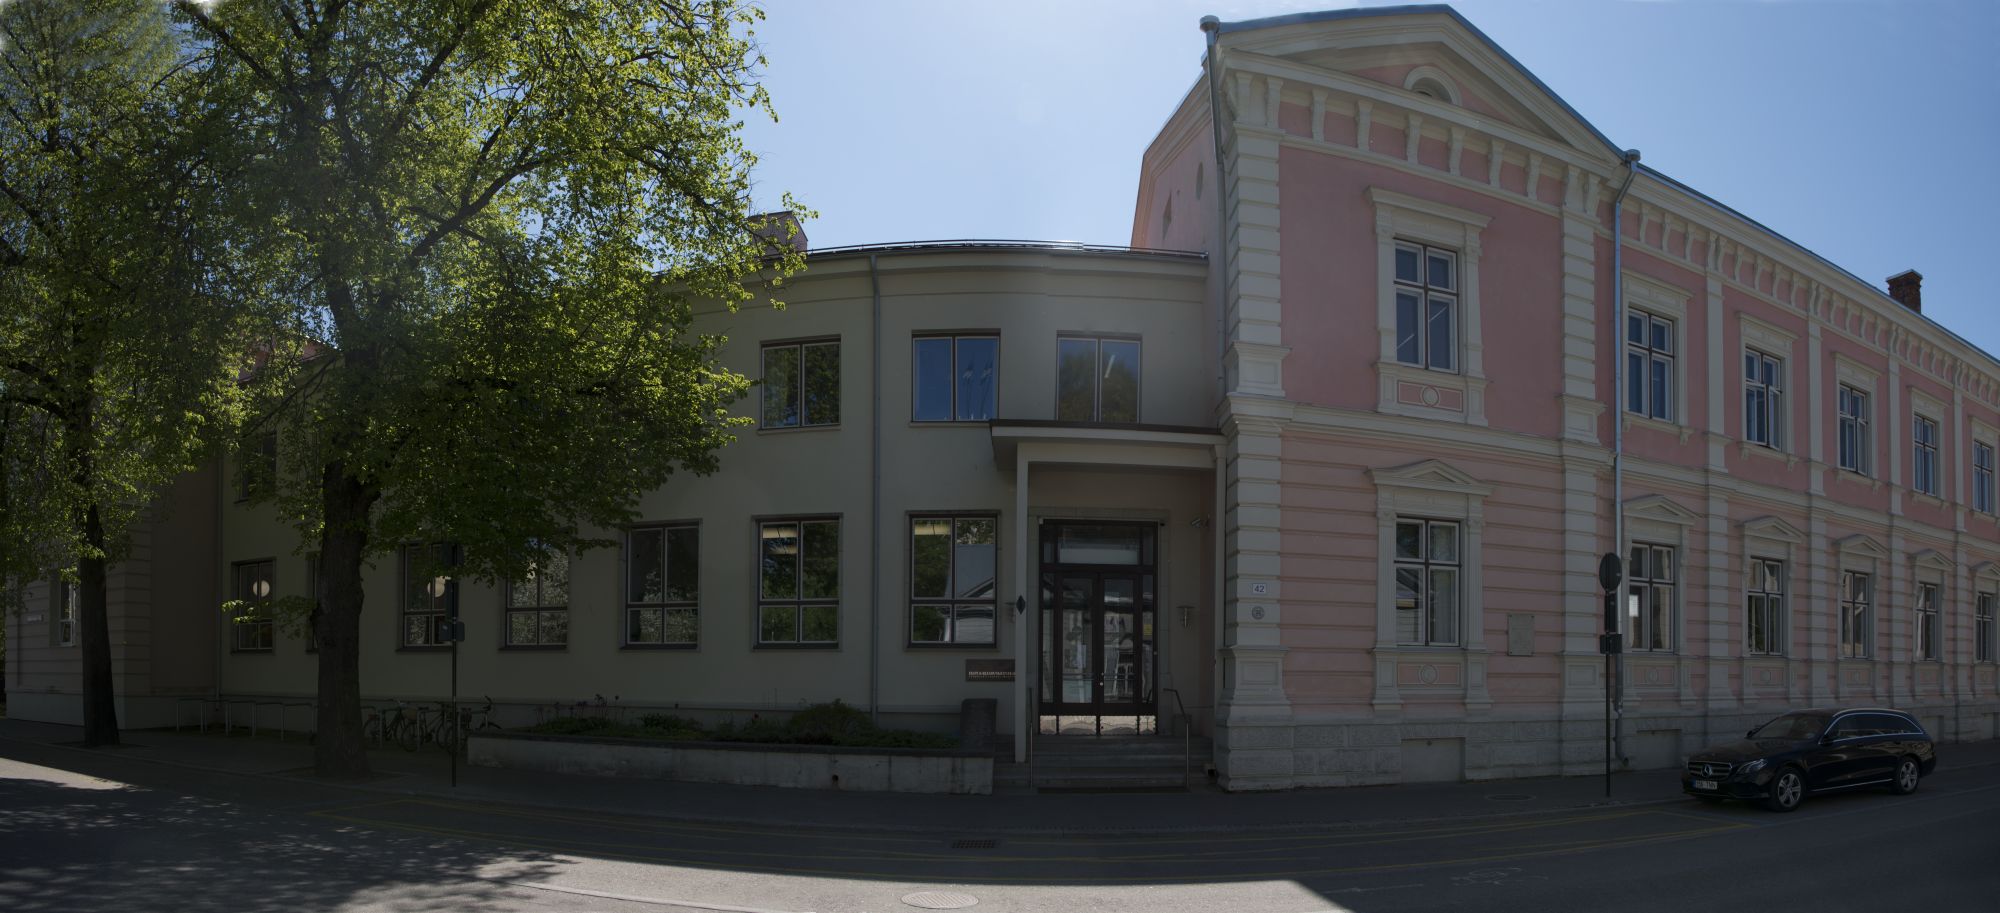 Bänneril on Eesti Kirjandusmuuseumi hoone aadressil Vanemuise 42. Tegemist on panoraamülesvõttega ja maja on näib kaarjana. Paremale poole jääb asutuse vana roosa värviga kaetud majaosa, keskele peauks ja vasakul on valkjas fuajeeakendega majaosa  ja kevadiselt roheliste lehtedega puud.